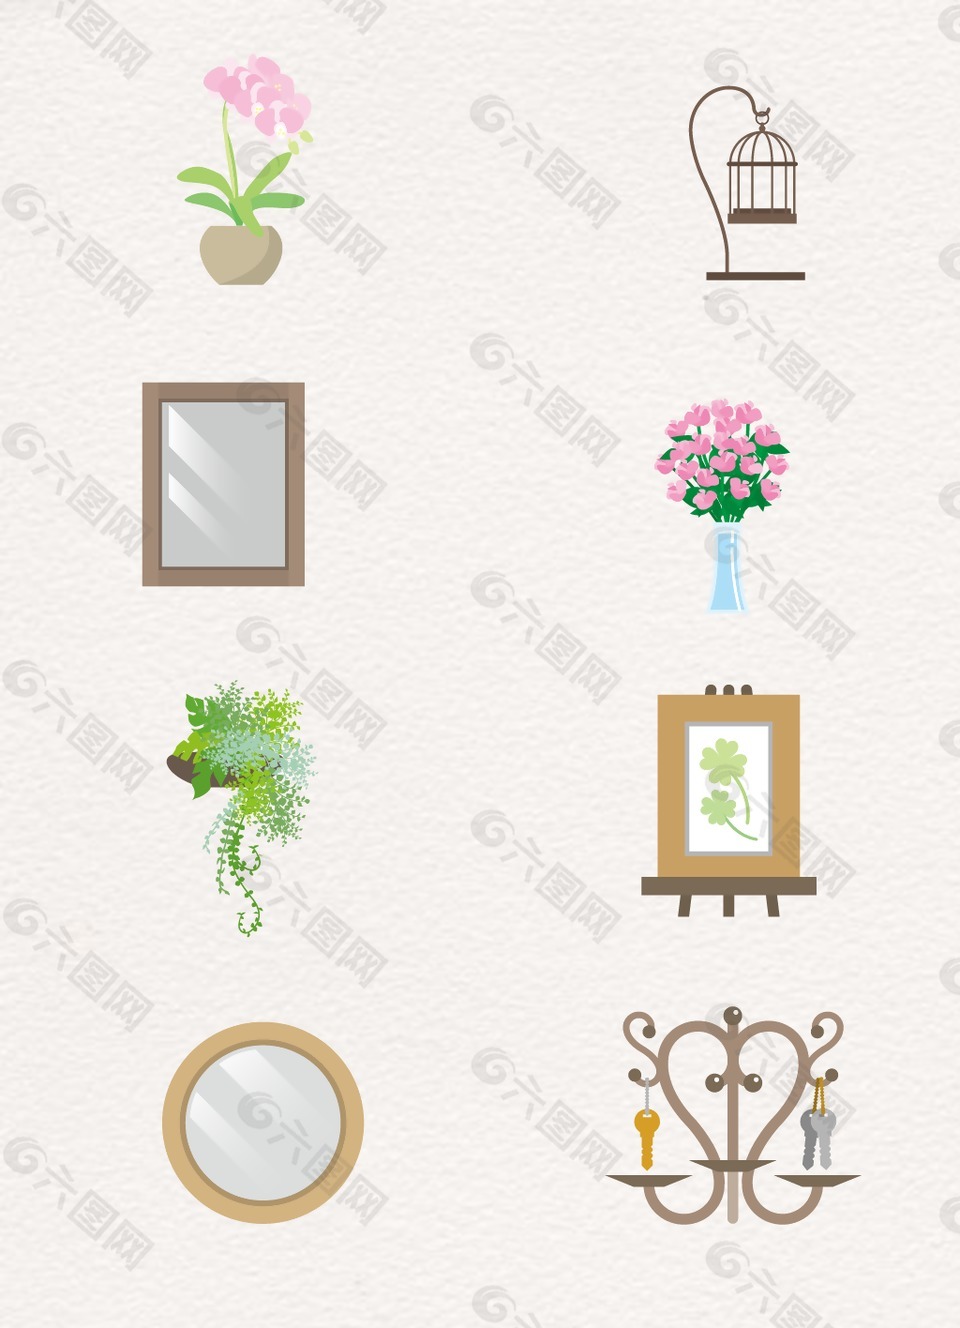 盆栽植物镜子设计图案